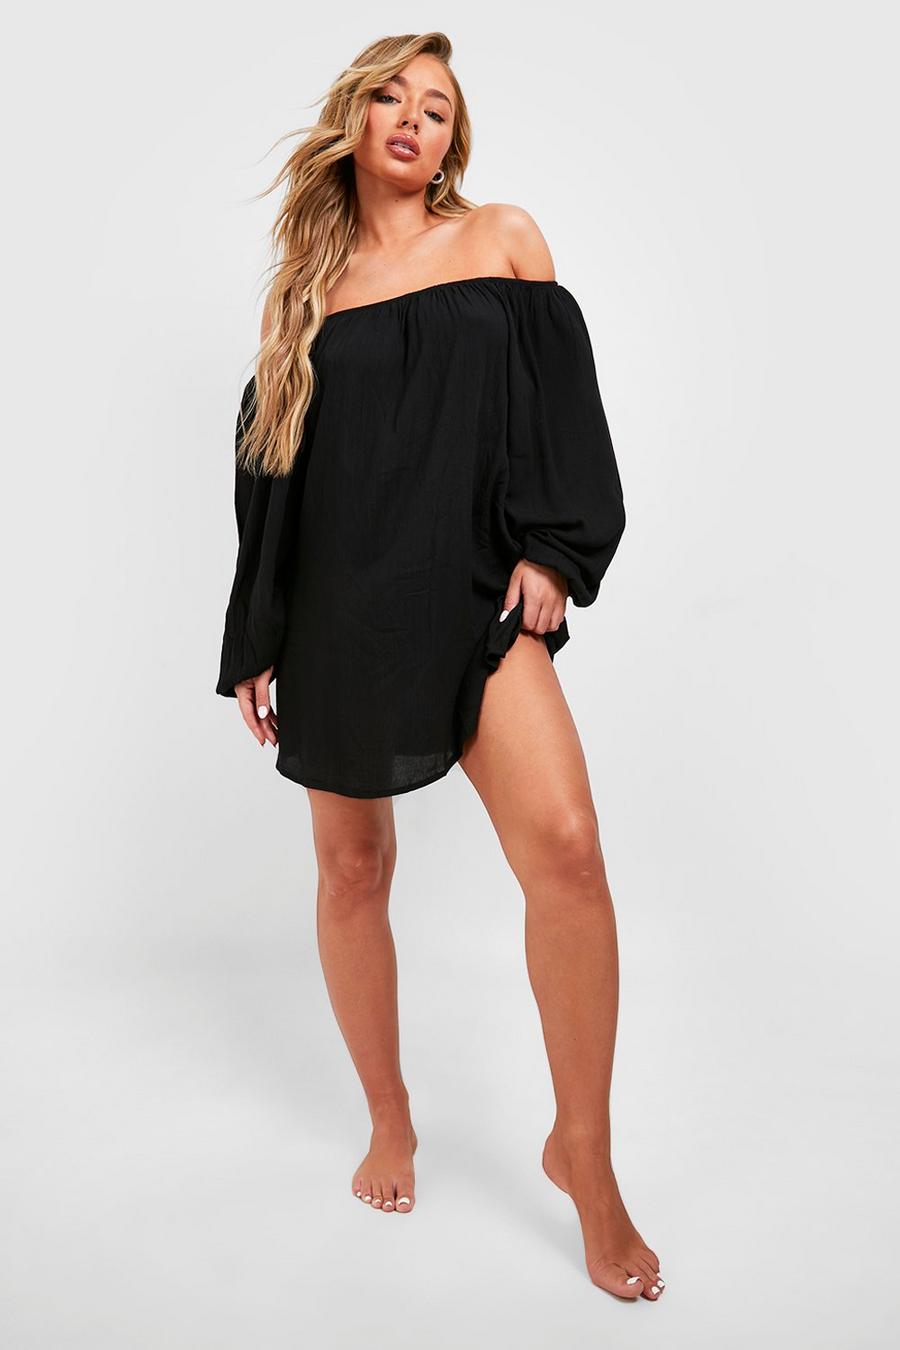 Black שמלת חוף מיני בסגנון ברדו מבד גאזה